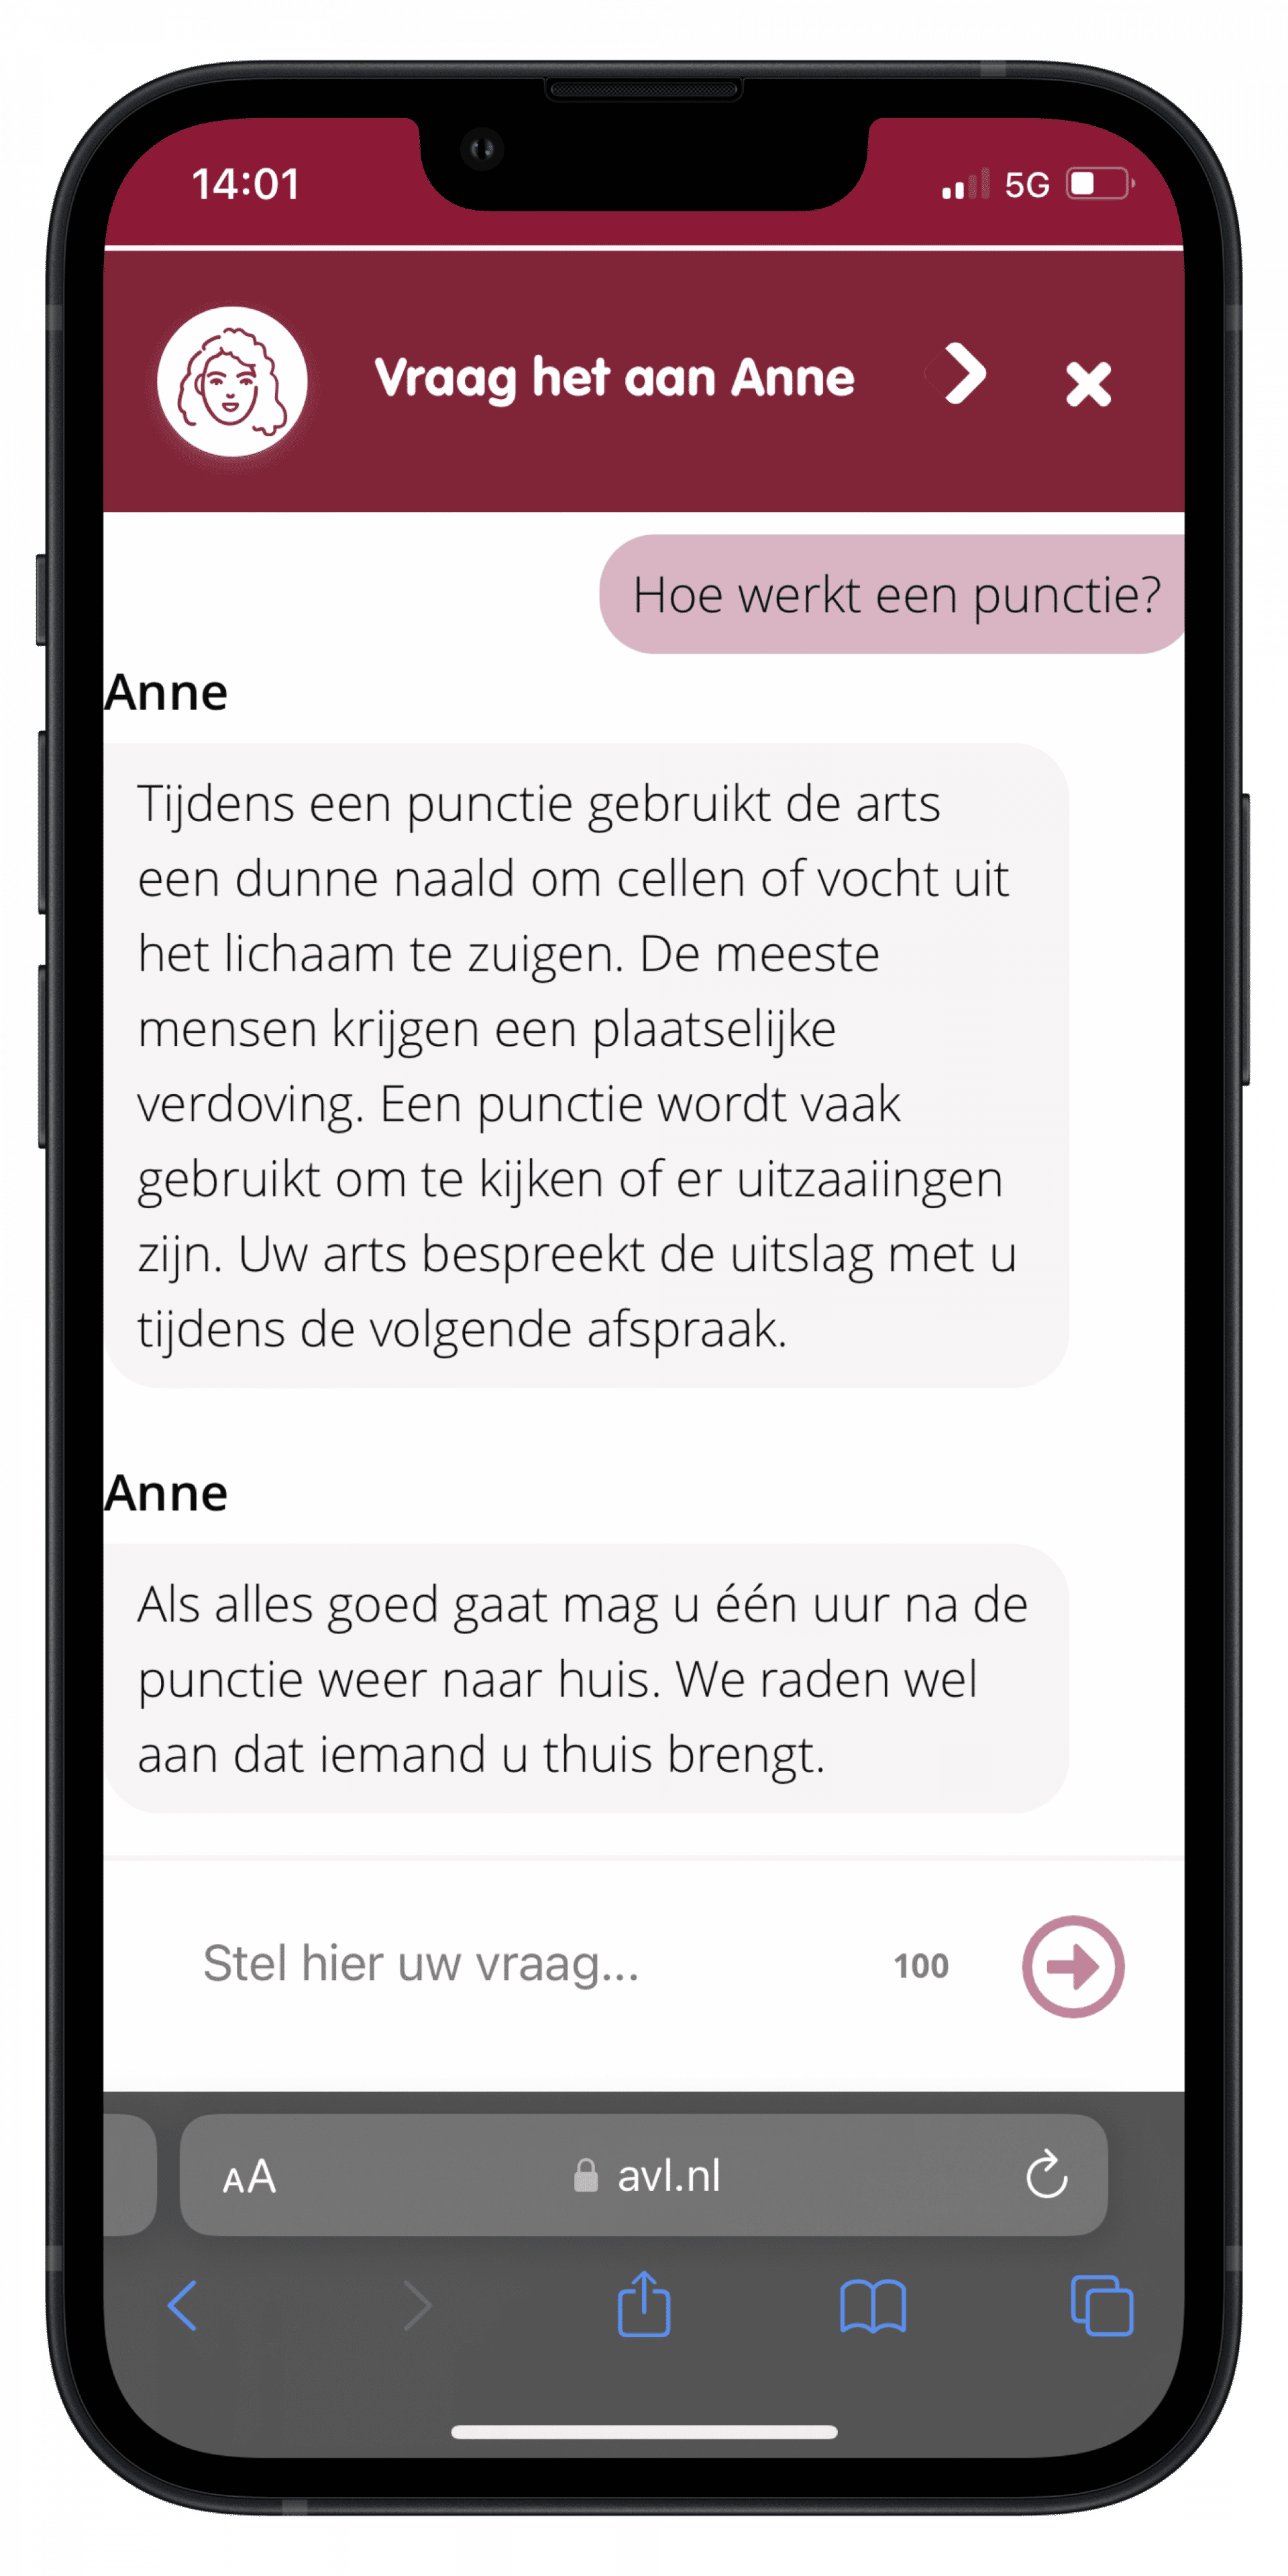 Customer Stories Antoni van Leeuwenhoek chatbot Gif plaatje AVL in iPhone